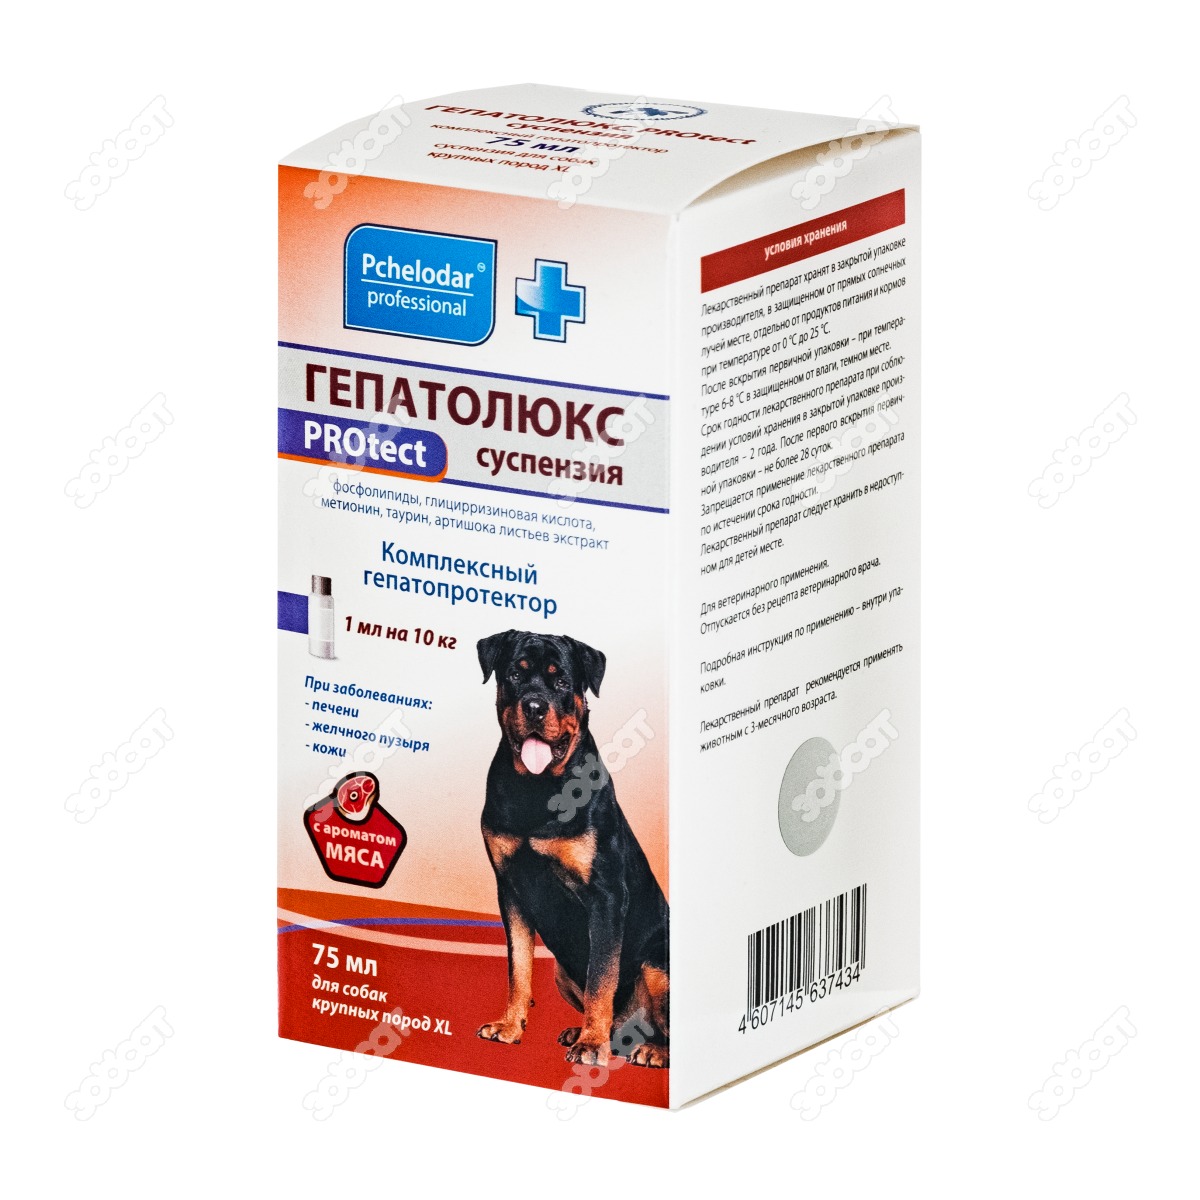 Гепатолюкс для собак купить. Гепатолюкс таблетки для собак. Суспензия Гепатолюкс для собак средних и крупных пород. Гепатолюкс protect суспензия для мелких собак 25 мл. Гепатолюкс суспензия для собак, 1 флакон.